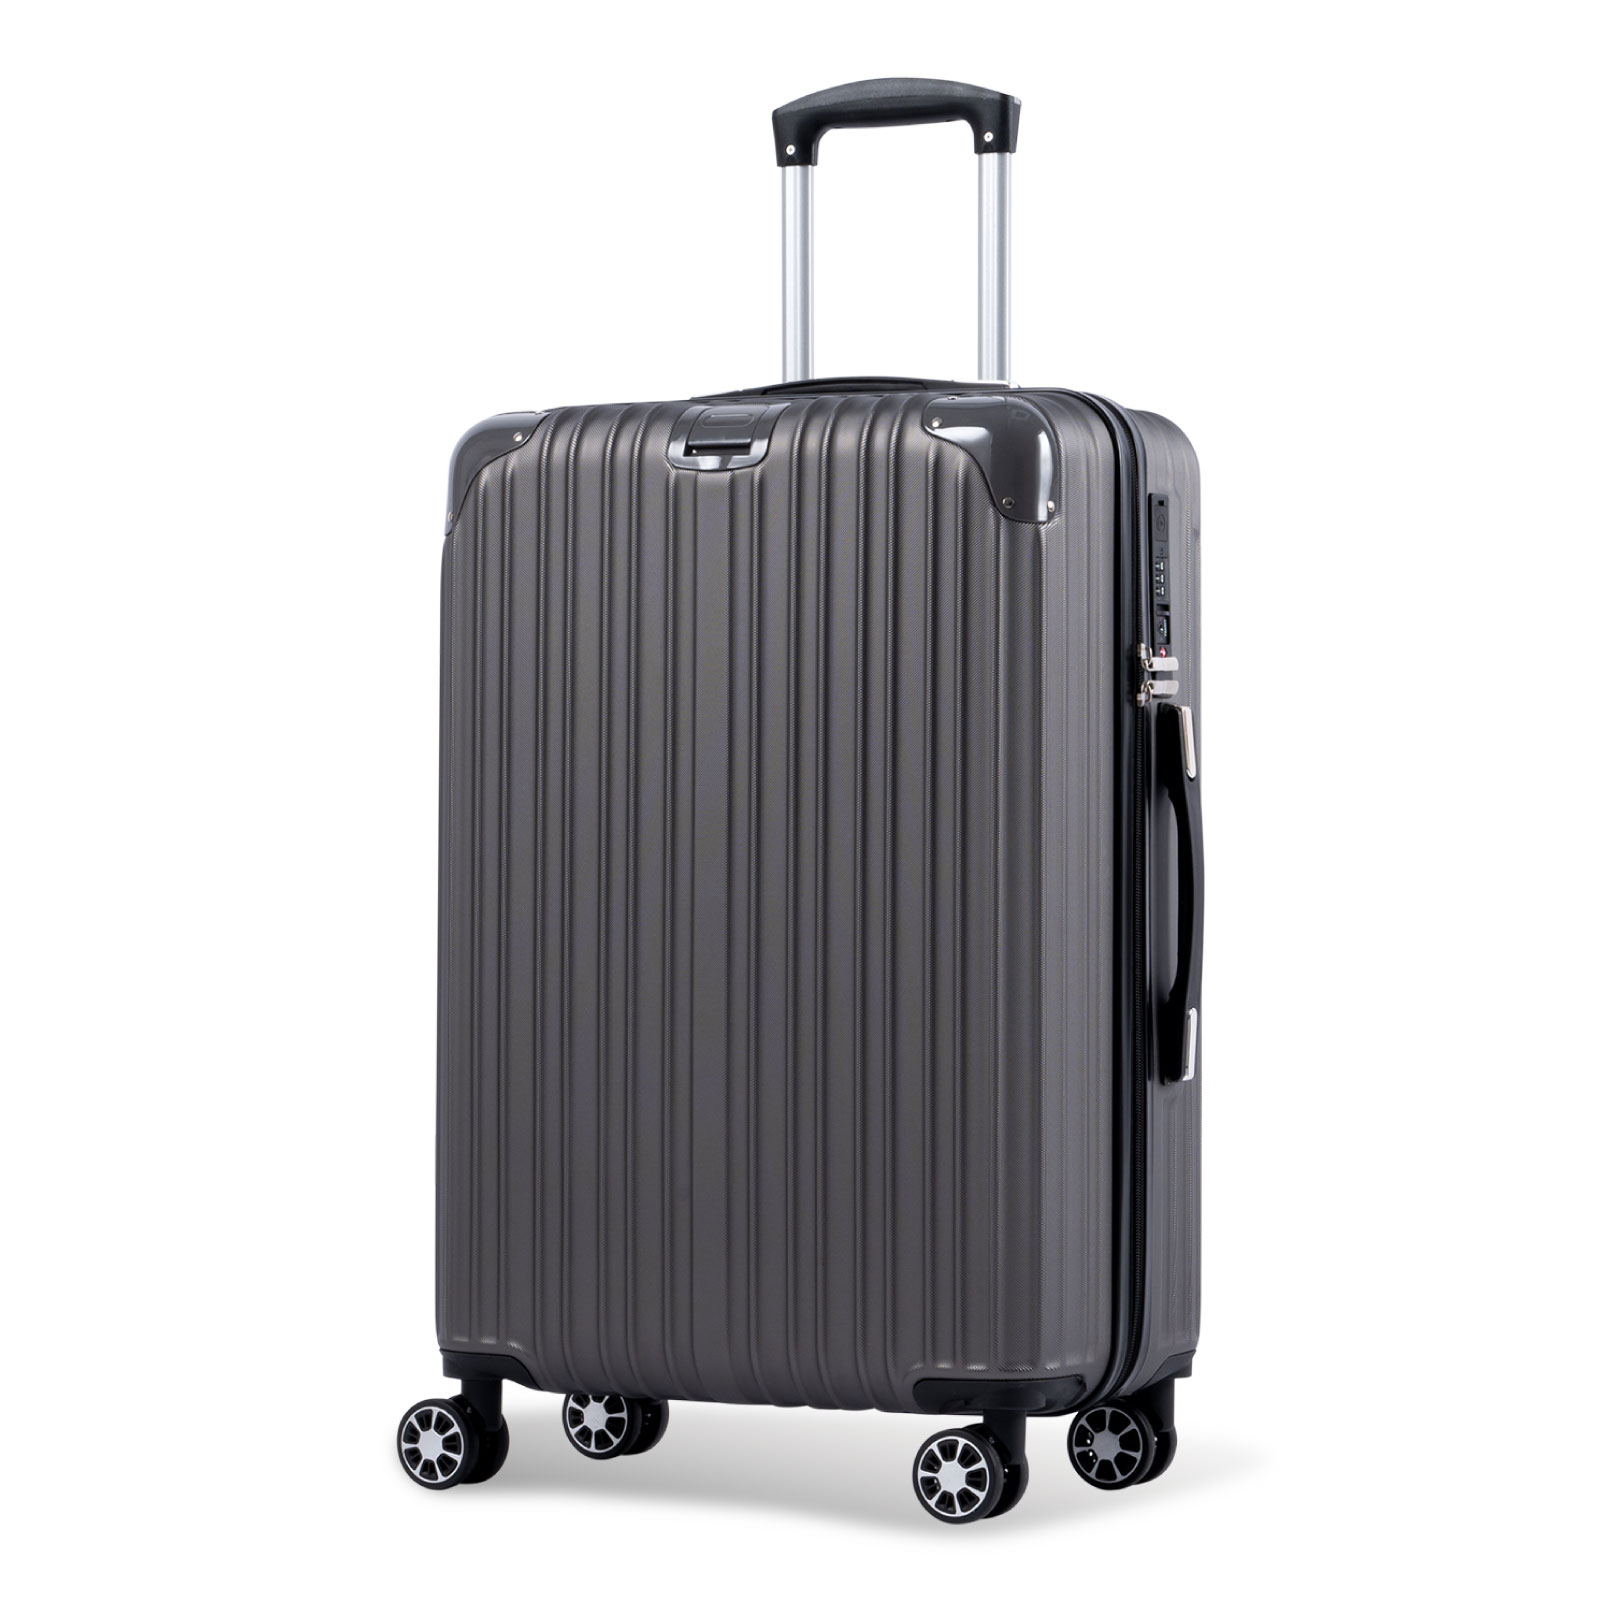 スーツケース USBポート付き キャリーケース Mサイズ キャリーバッグ